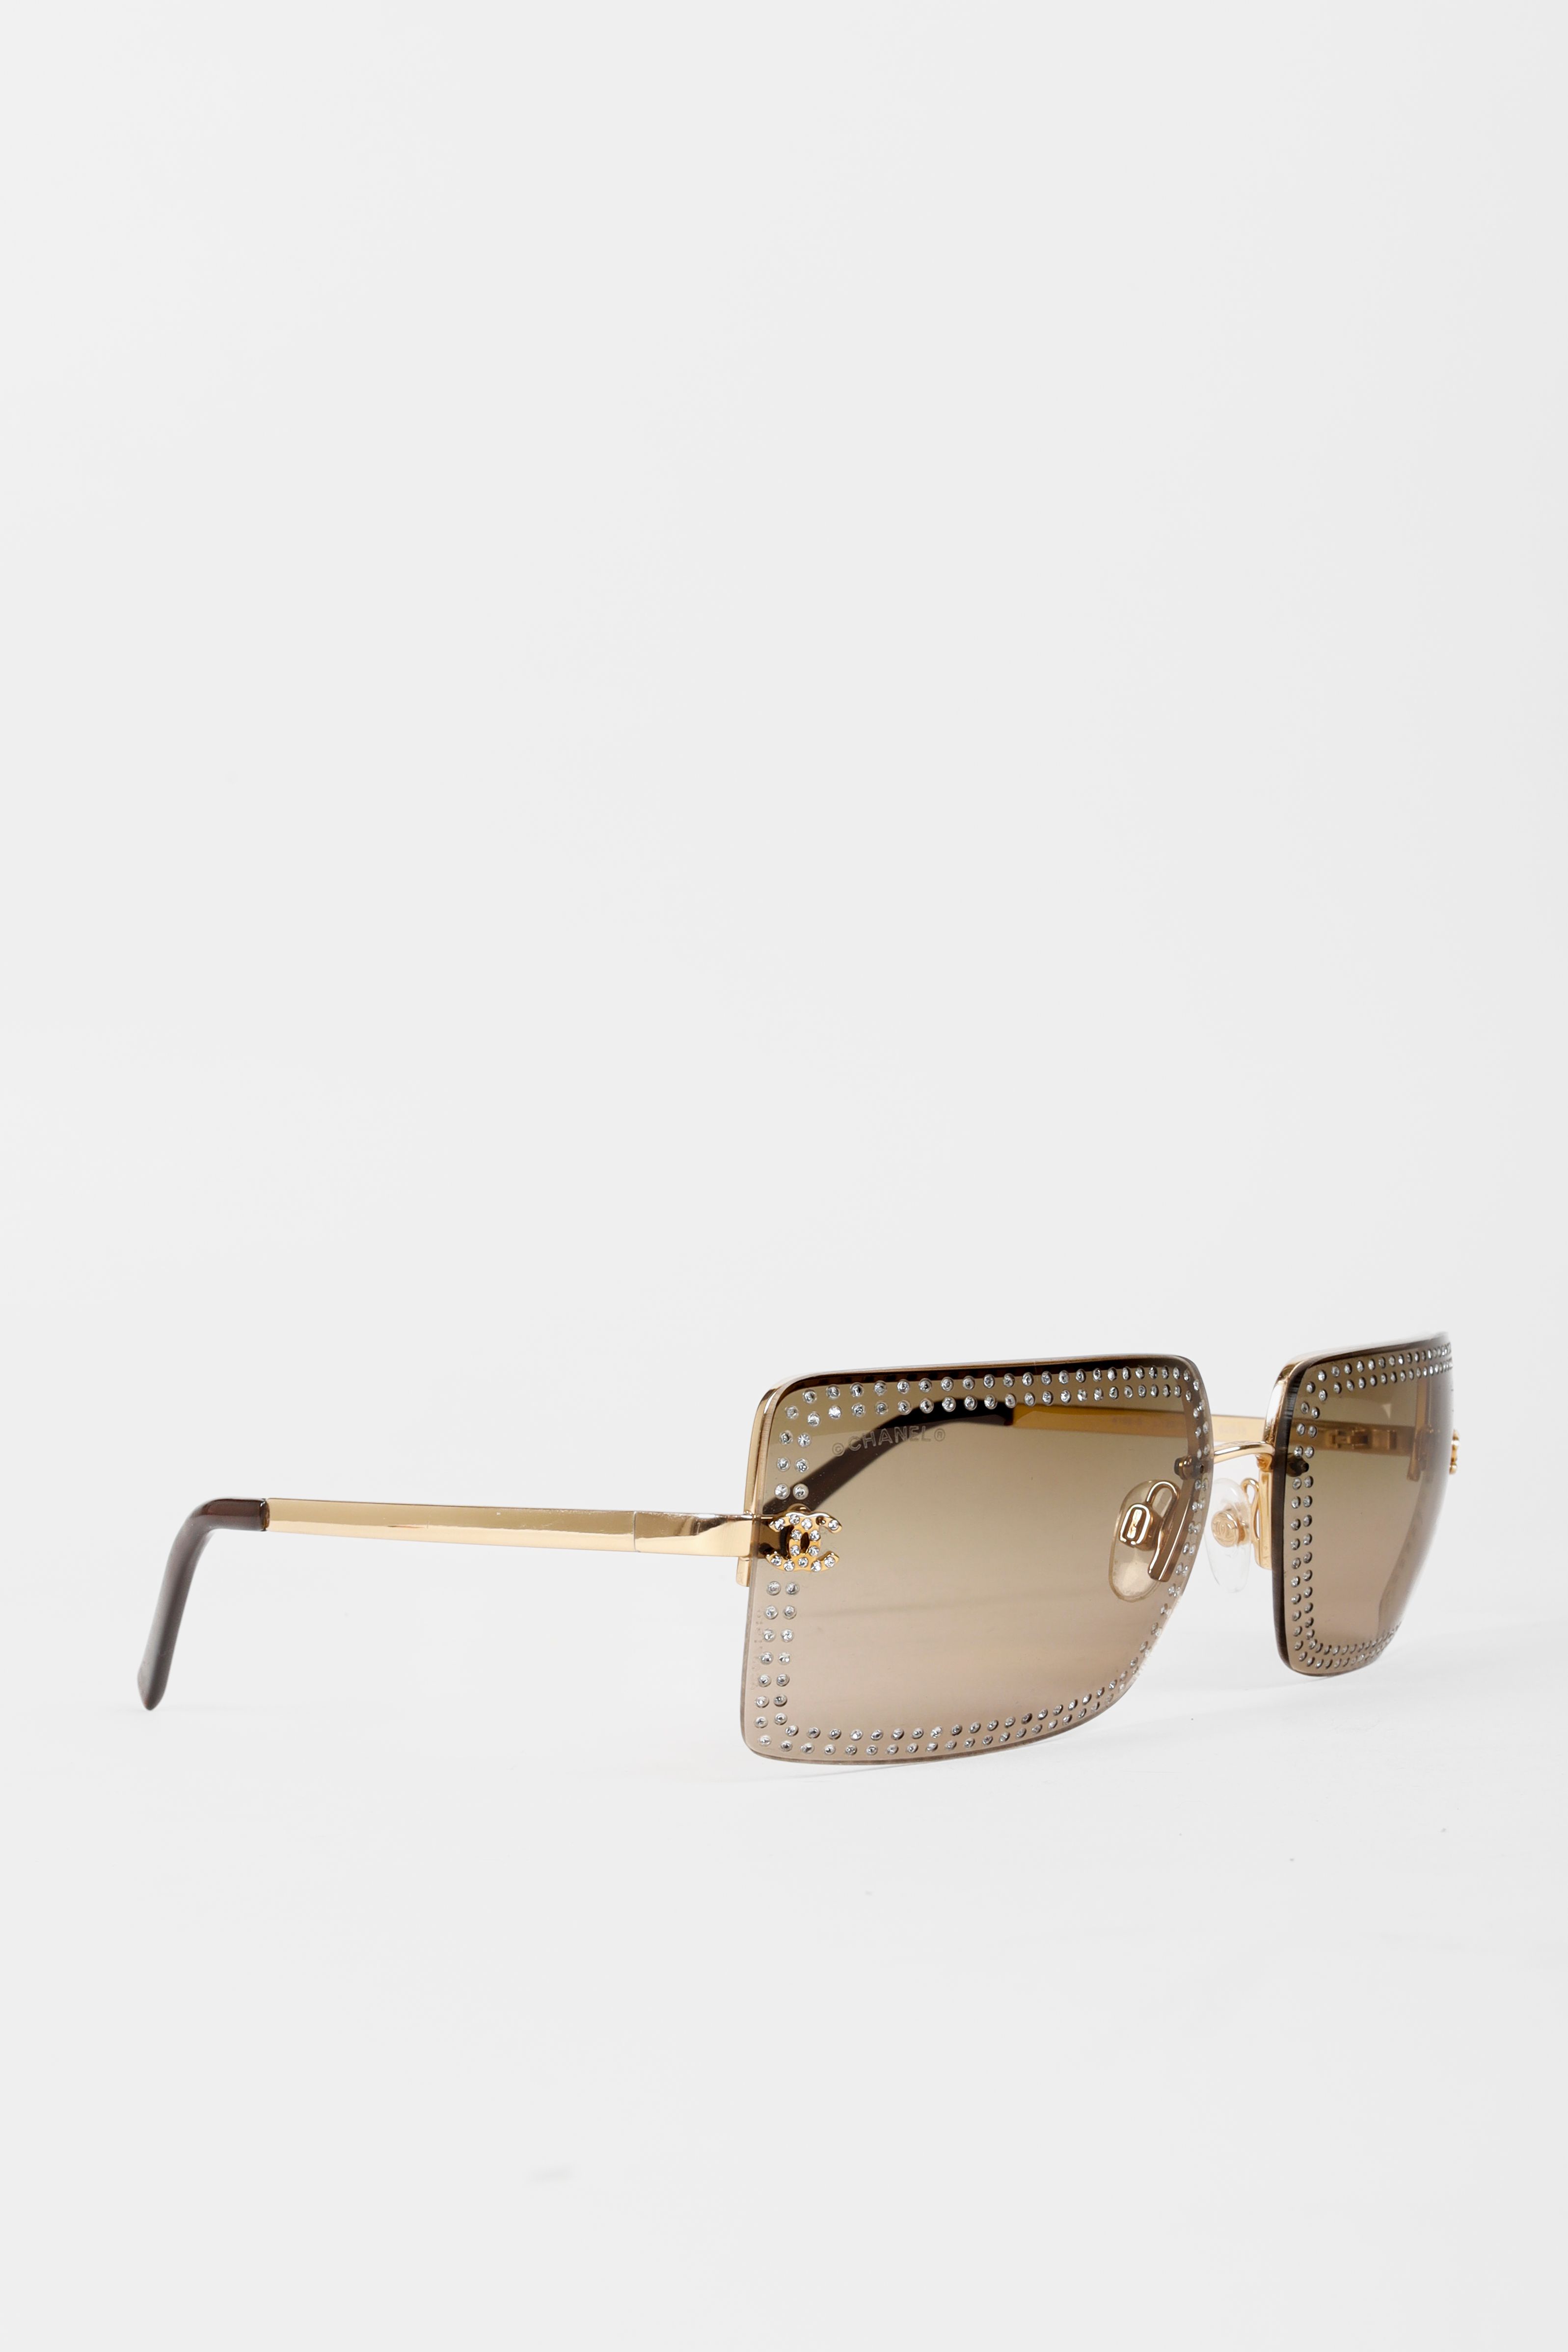 Chanel sunglasses 5371 CC LOGO IN BLACK RESIN + SUNGLASSES CASE